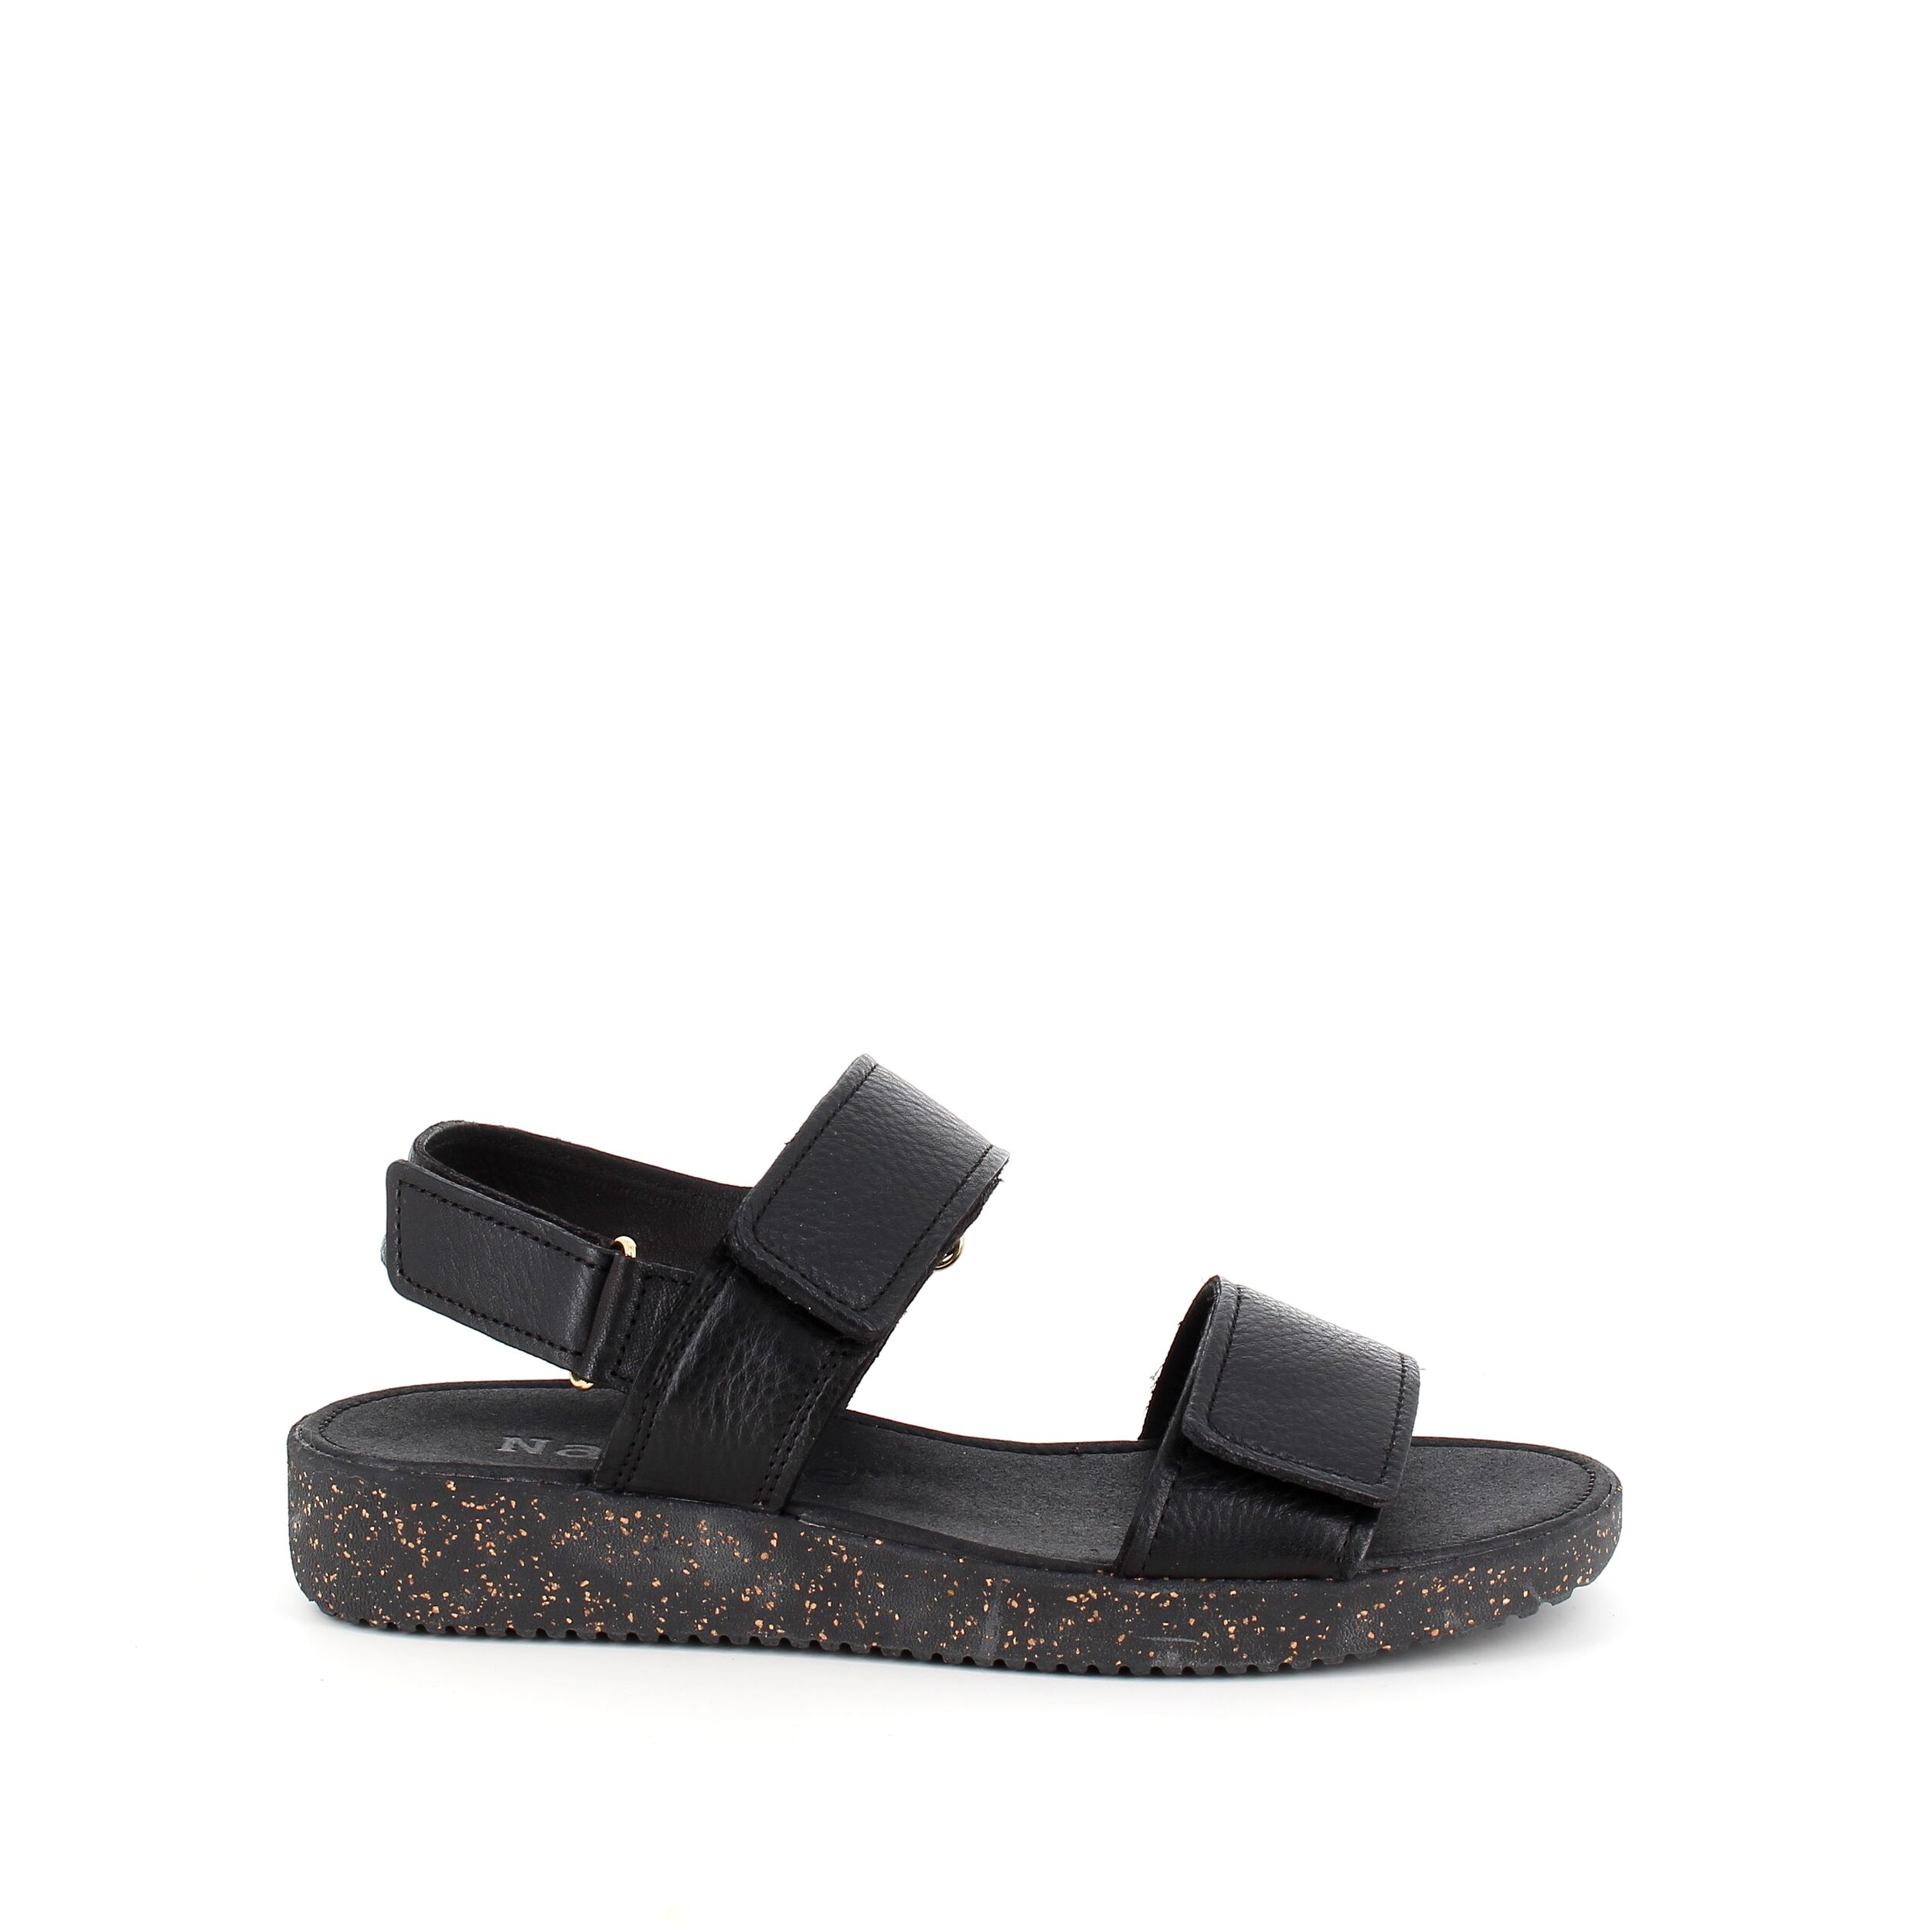 Se Nature sandal i sort skind med sorte såler - 40 hos Sygeplejebutikken.dk